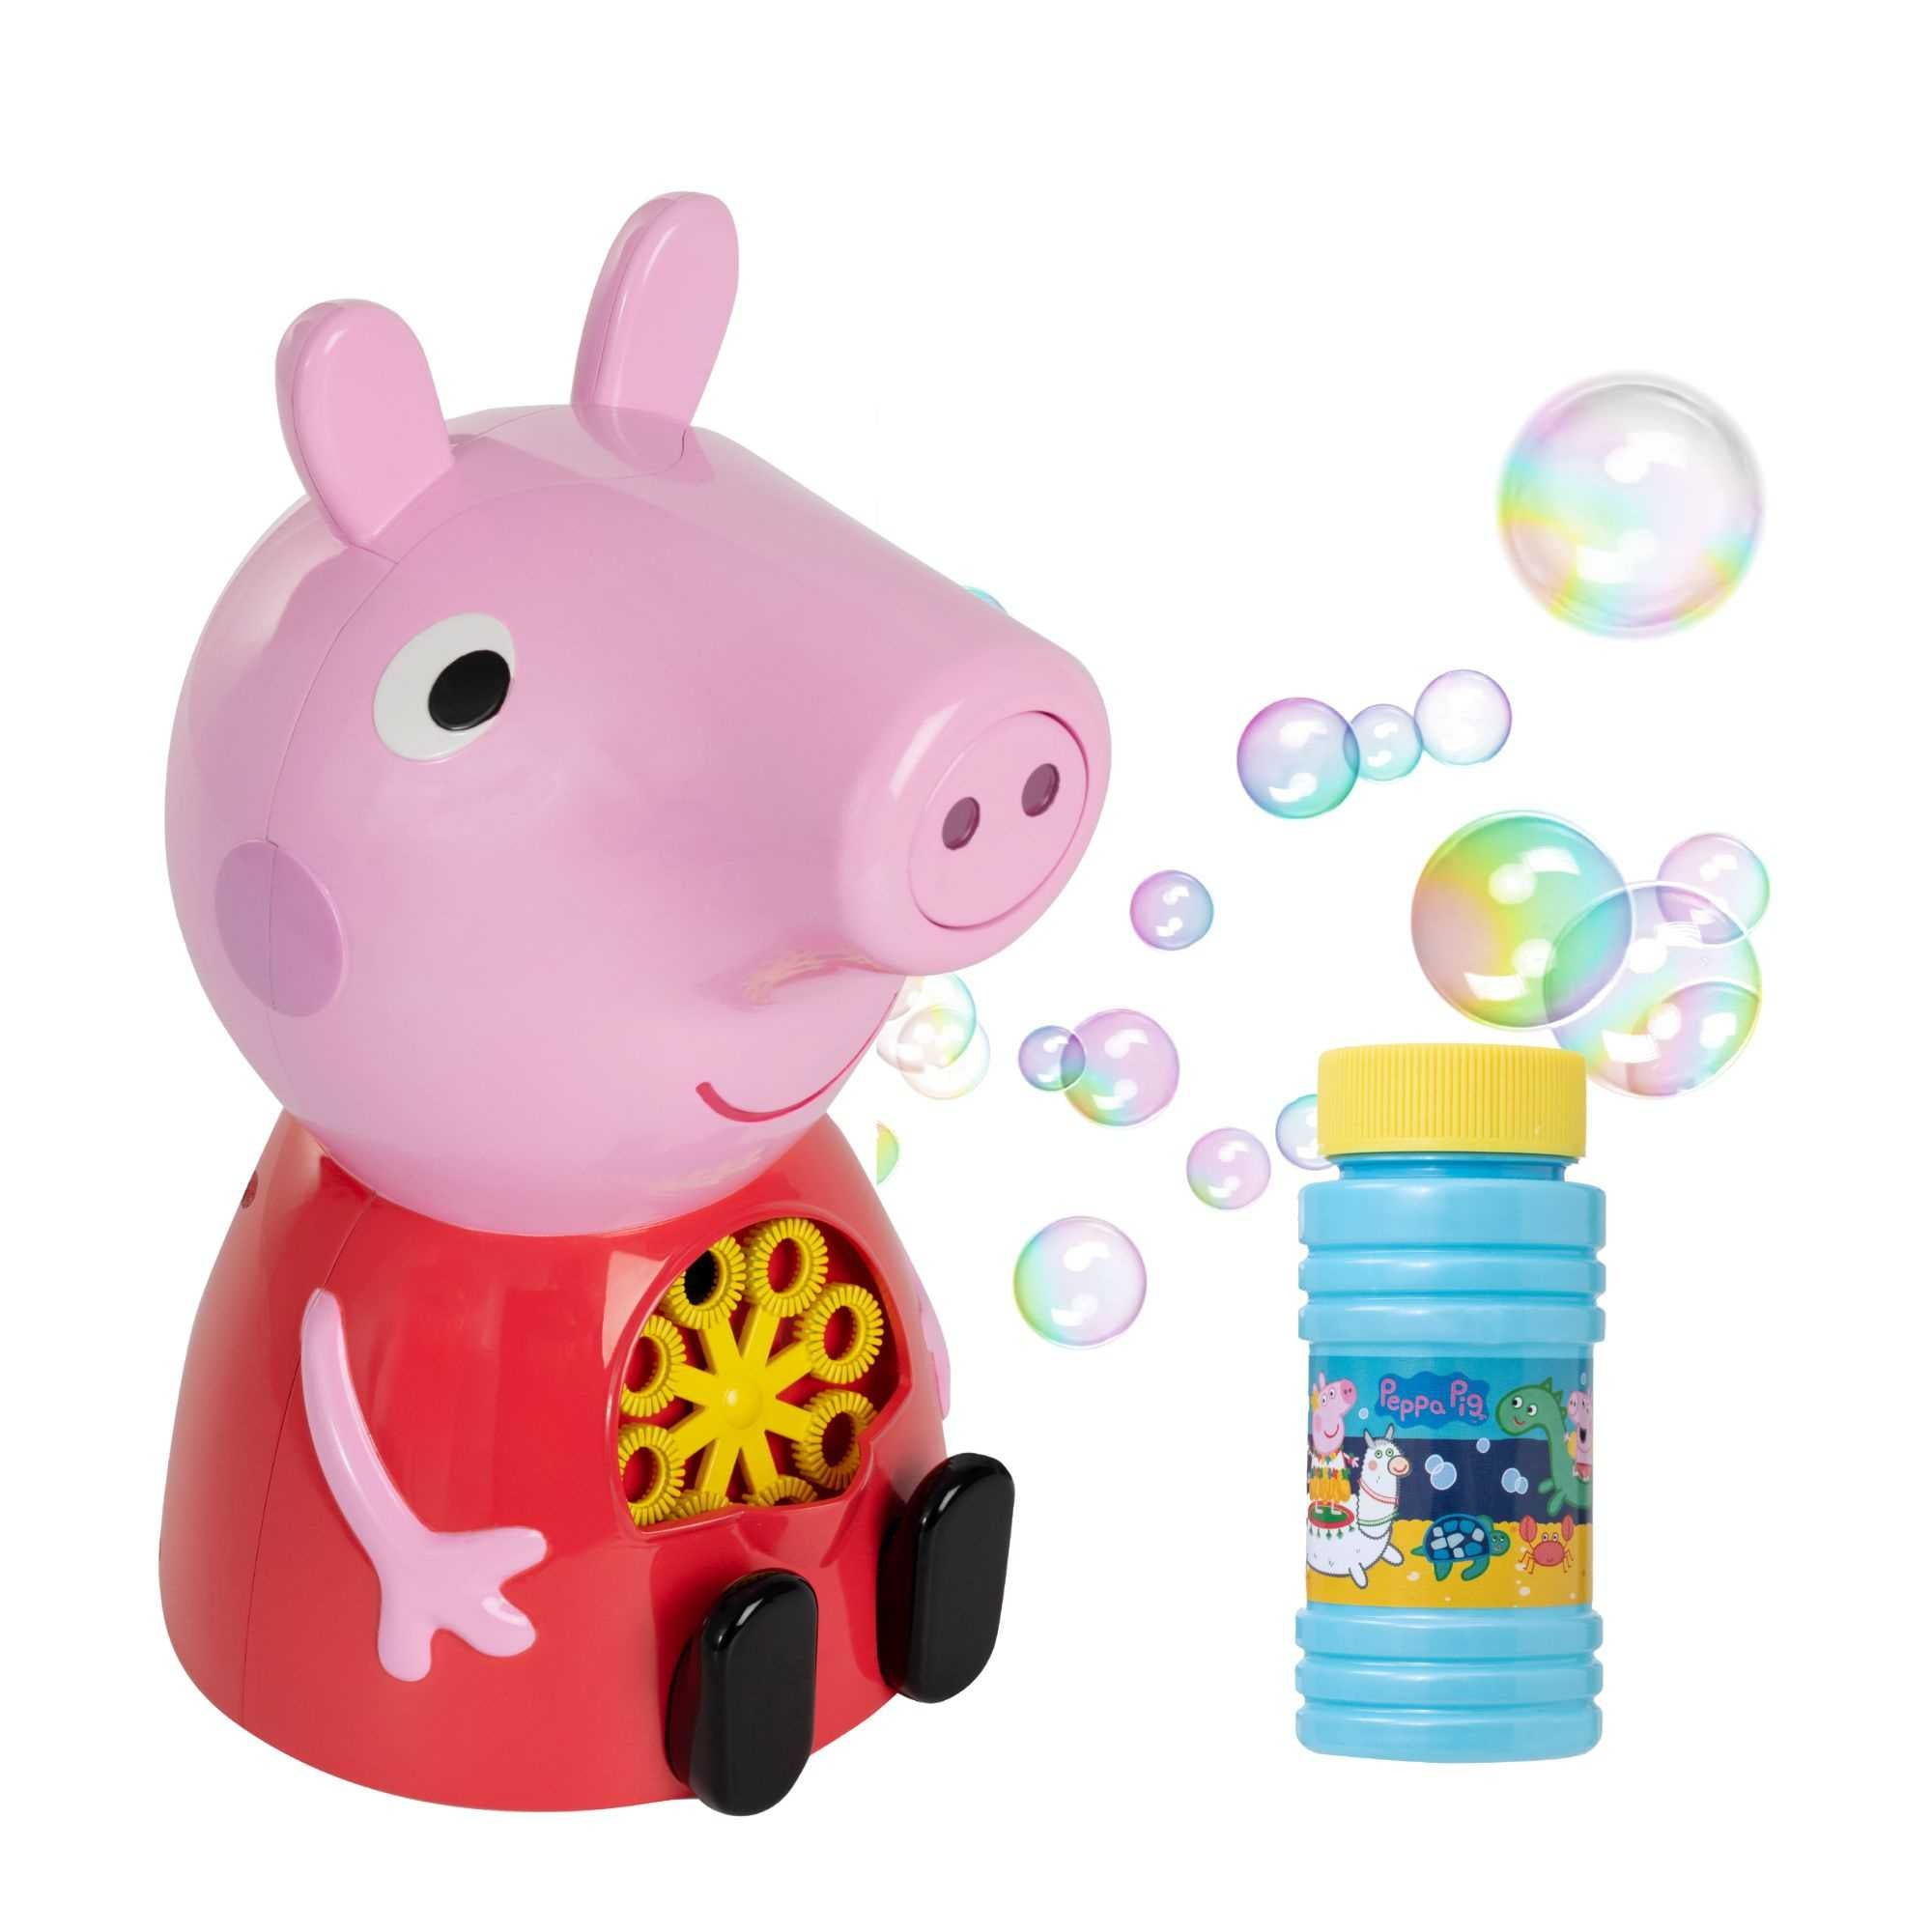 Peppa Pig bubble Machine